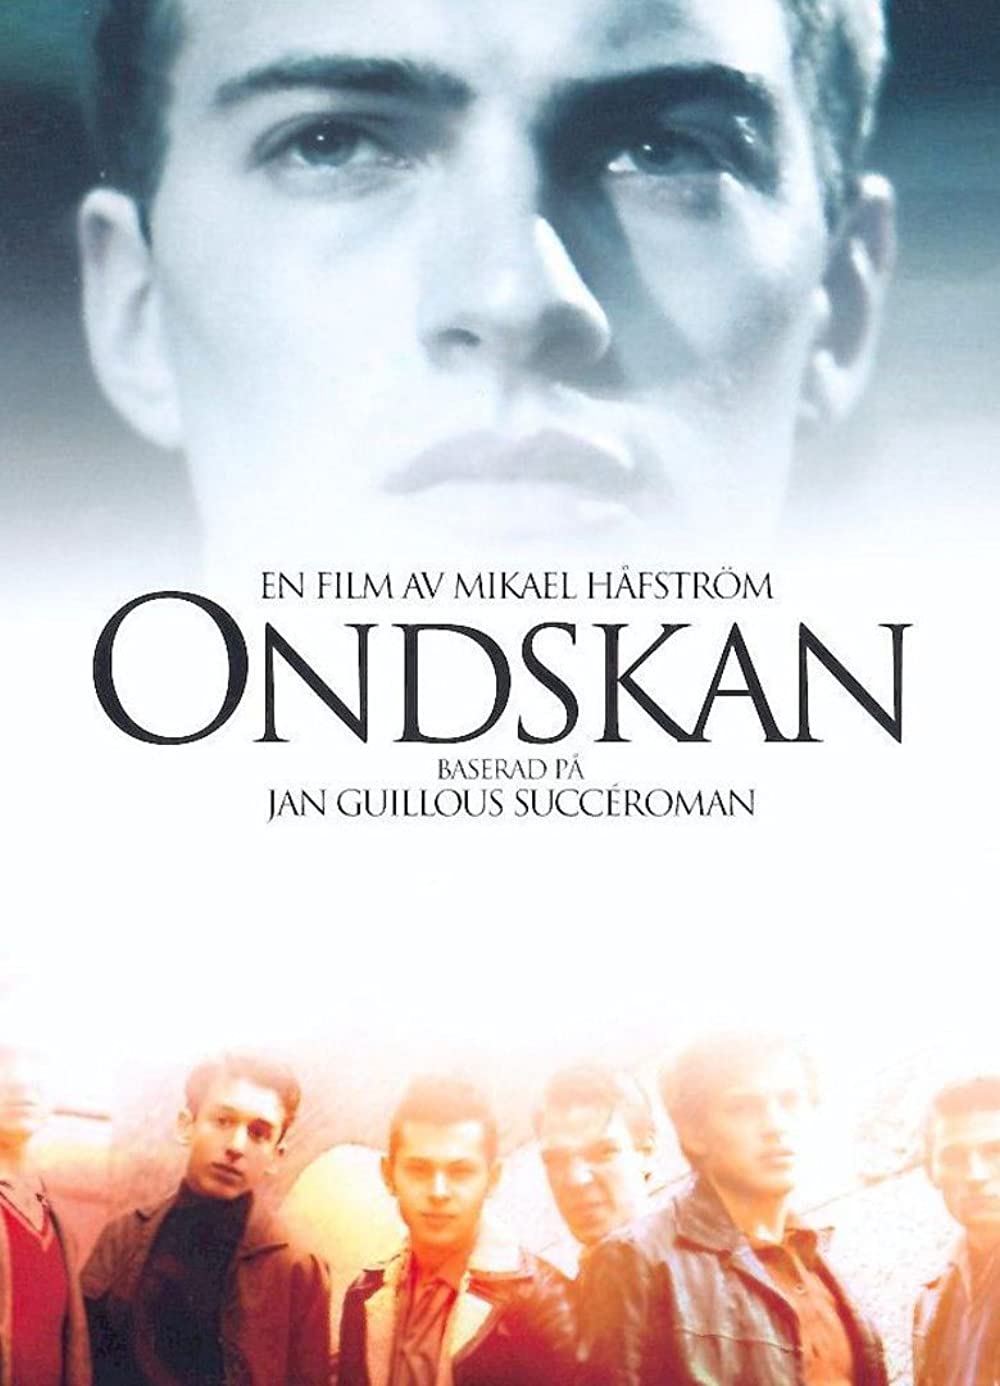 Ondskan (2003) เกมส์ชีวิตลิขิตลูกผู้ชาย